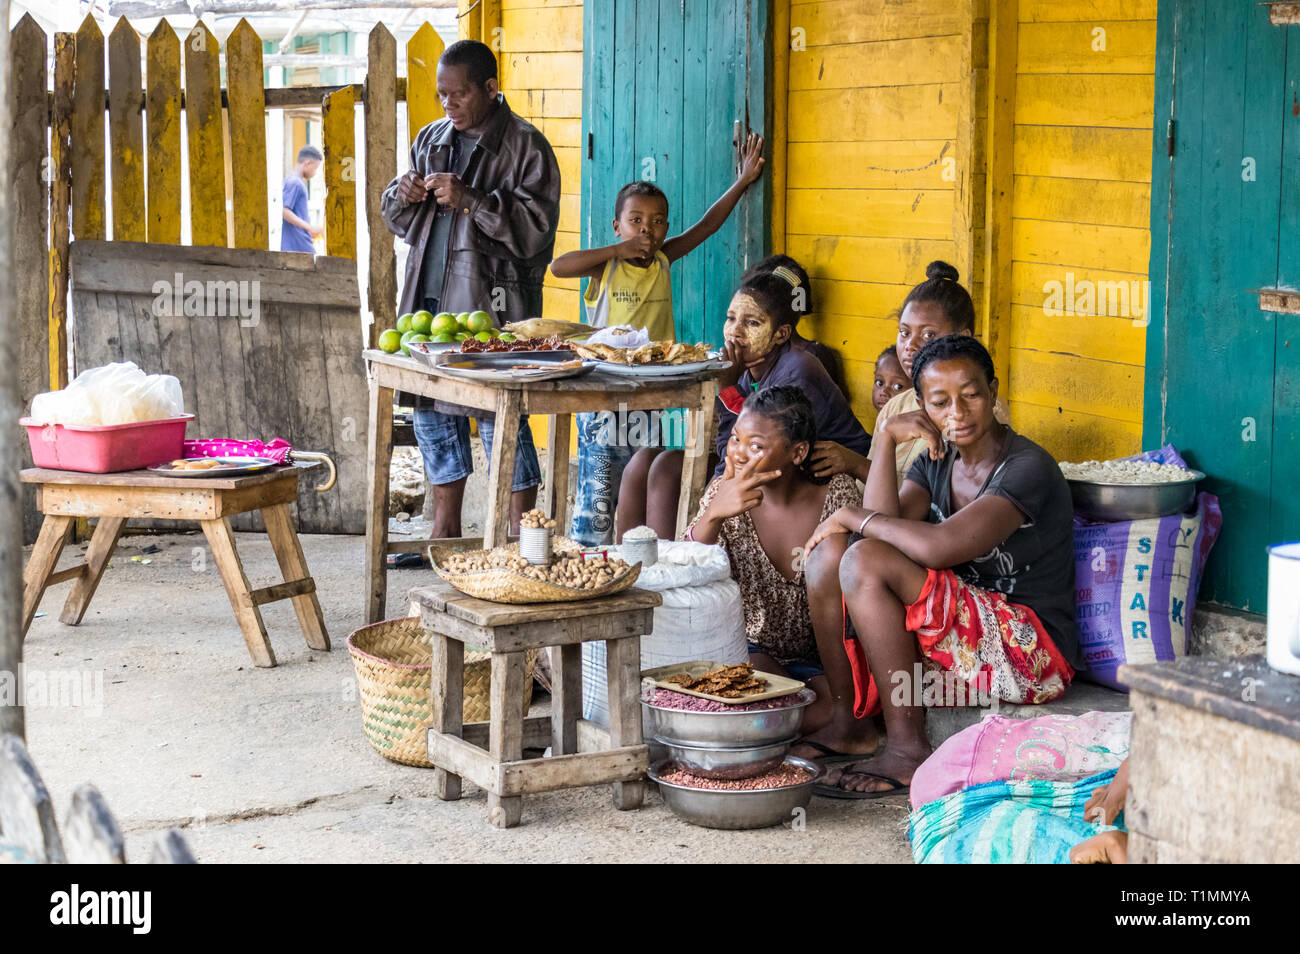 Andavadoaka, Madagaskar - 13 Januar 2019: madagassische Frauen Verkauf von Lebensmitteln auf die Tische in Andavadoaka, Madagaskar platziert. Stockfoto